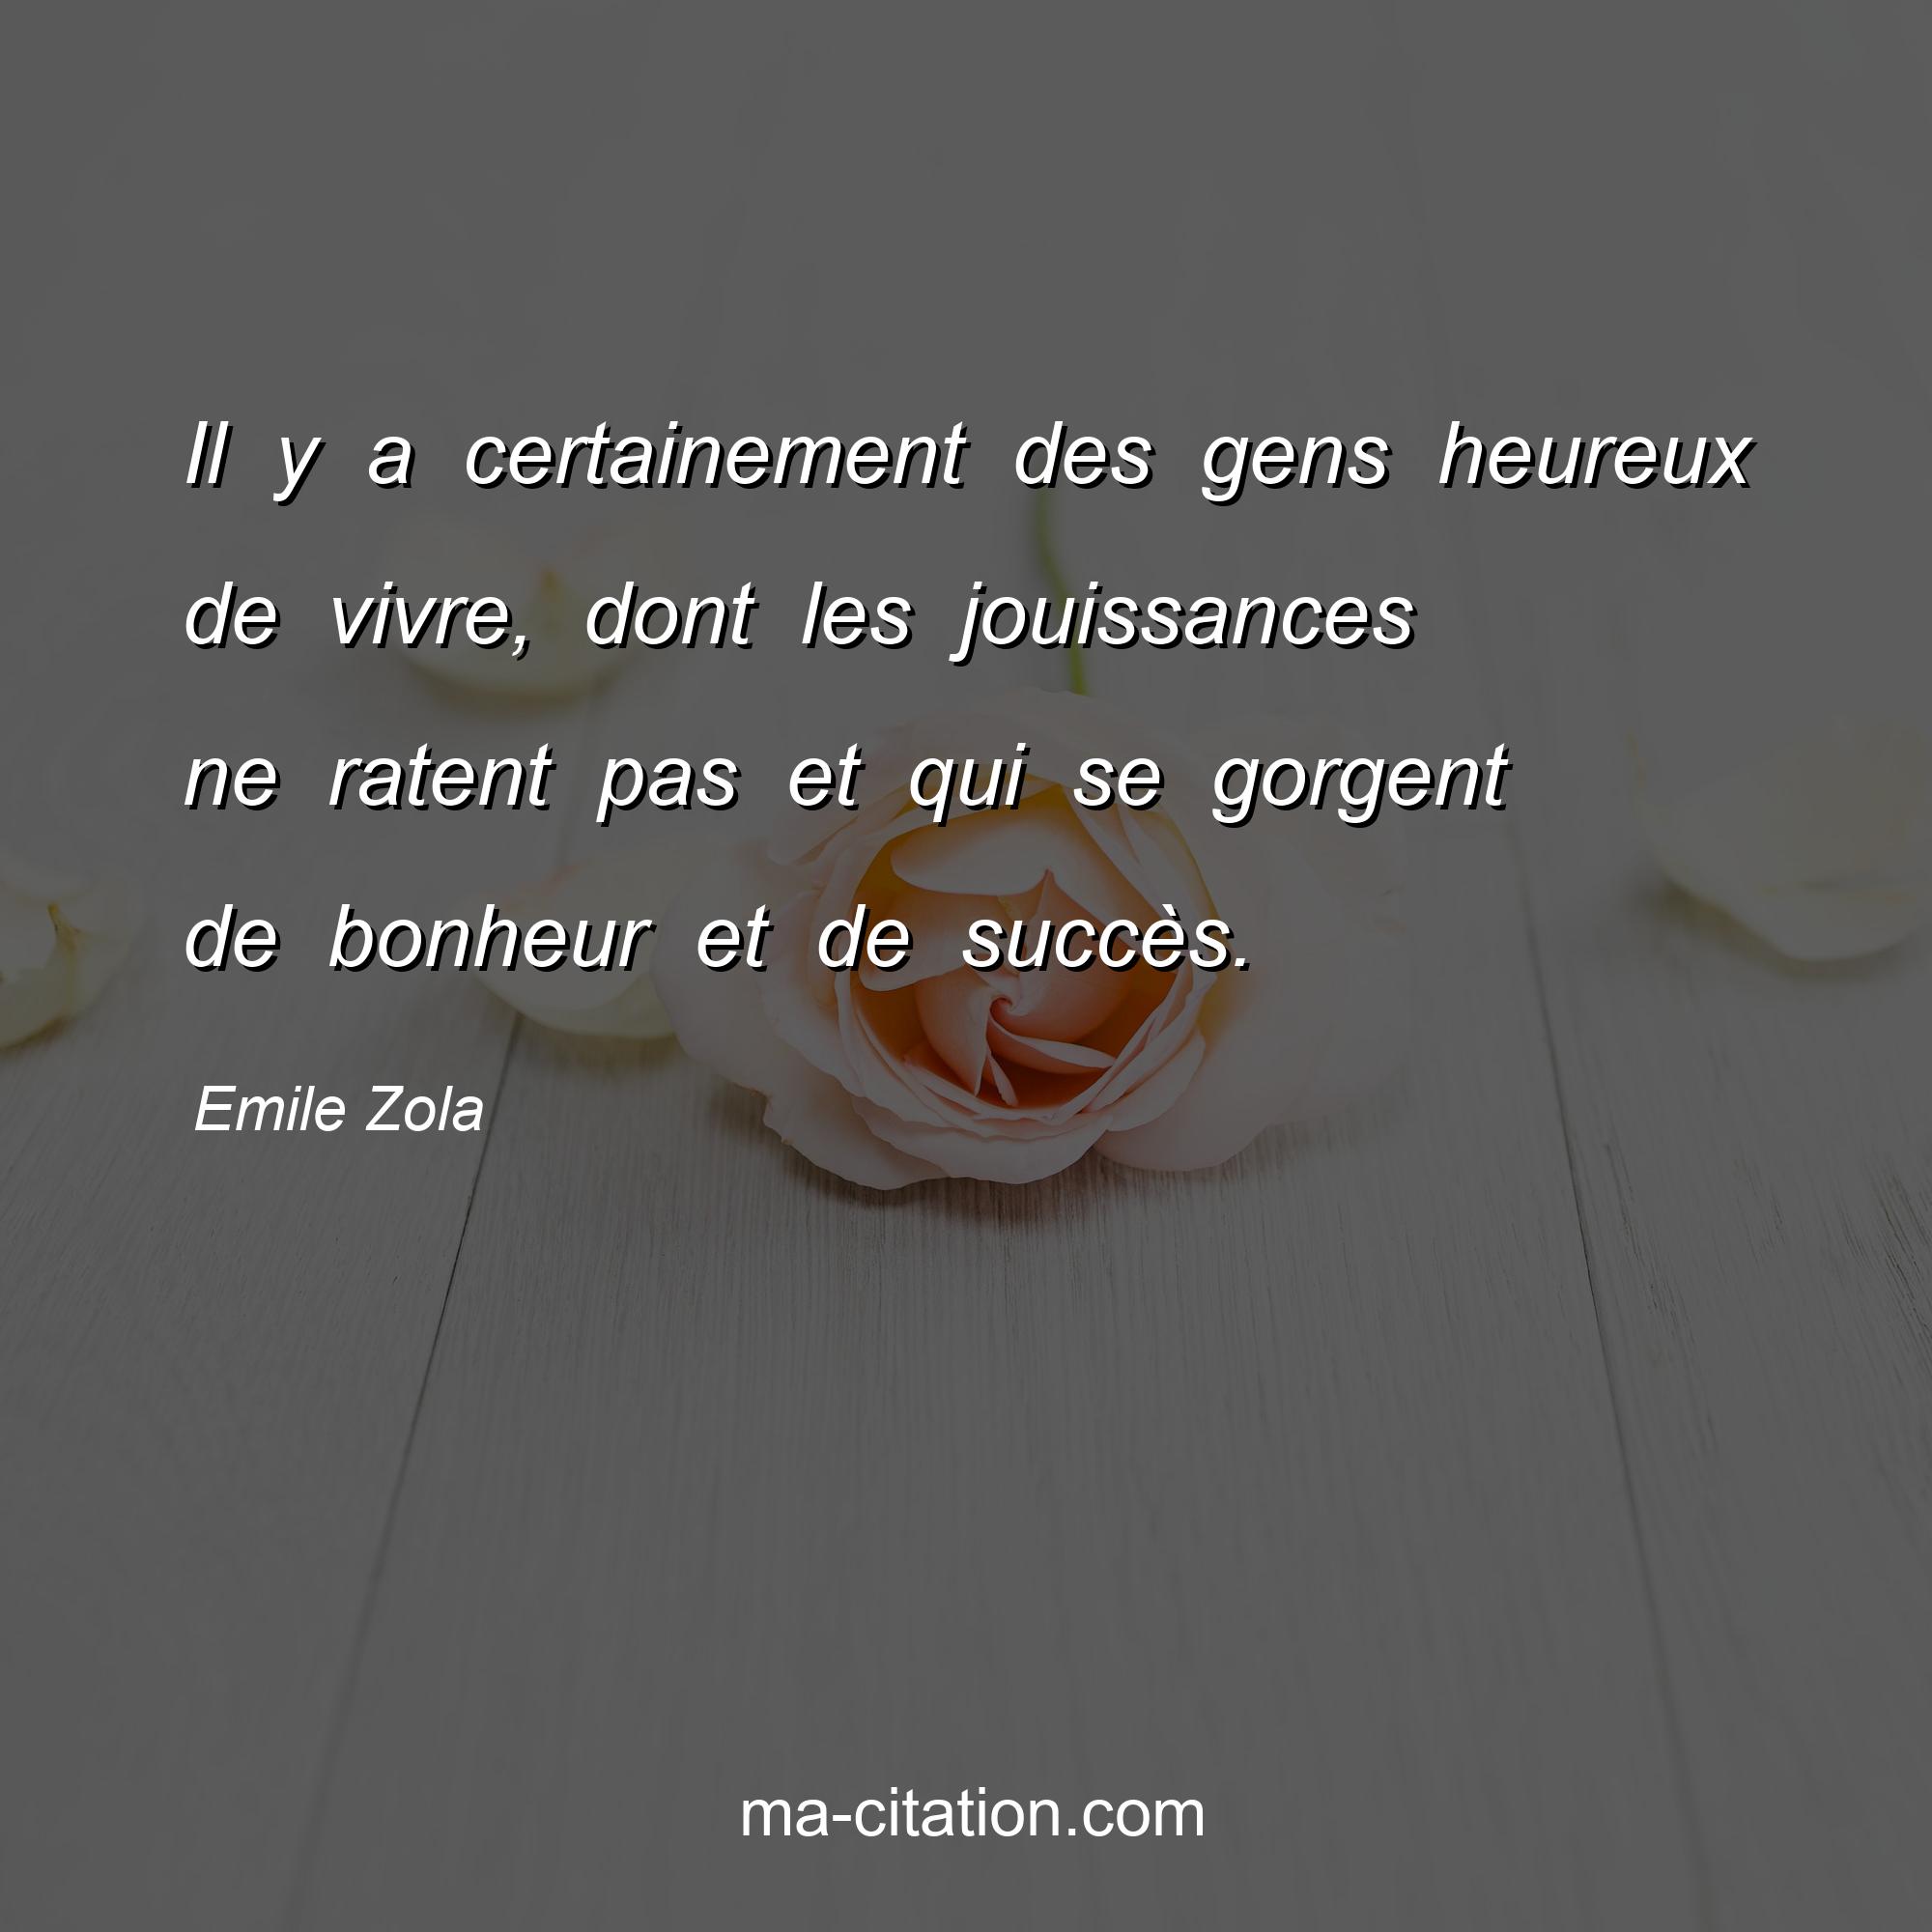 Emile Zola : Il y a certainement des gens heureux de vivre, dont les jouissances ne ratent pas et qui se gorgent de bonheur et de succès.